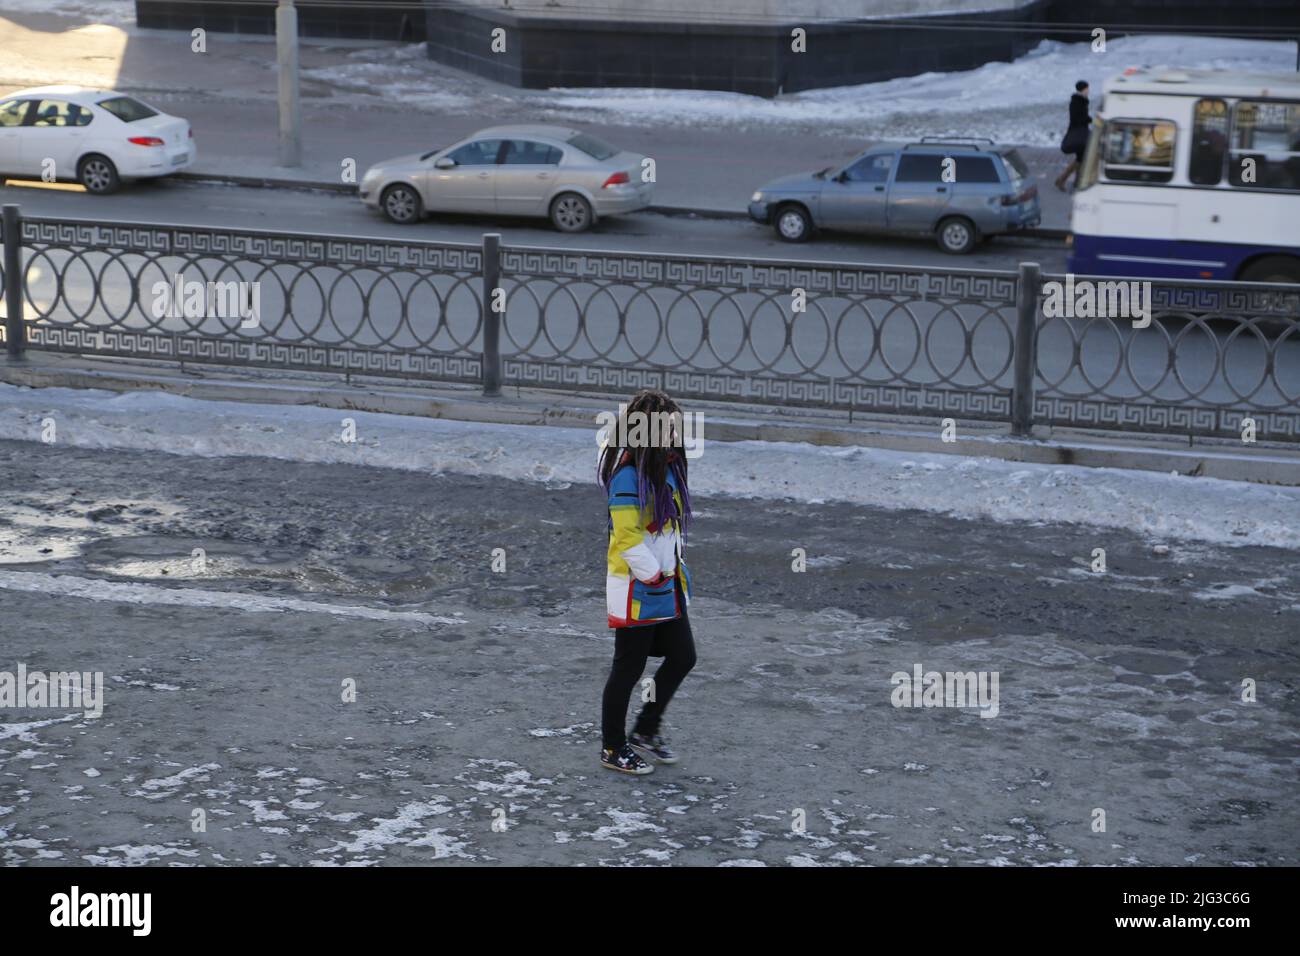 Chica con trenzas, con un abrigo blanco azul amarillo, camina sola a lo largo de una calle nevada con coches, separados por una valla Foto de stock